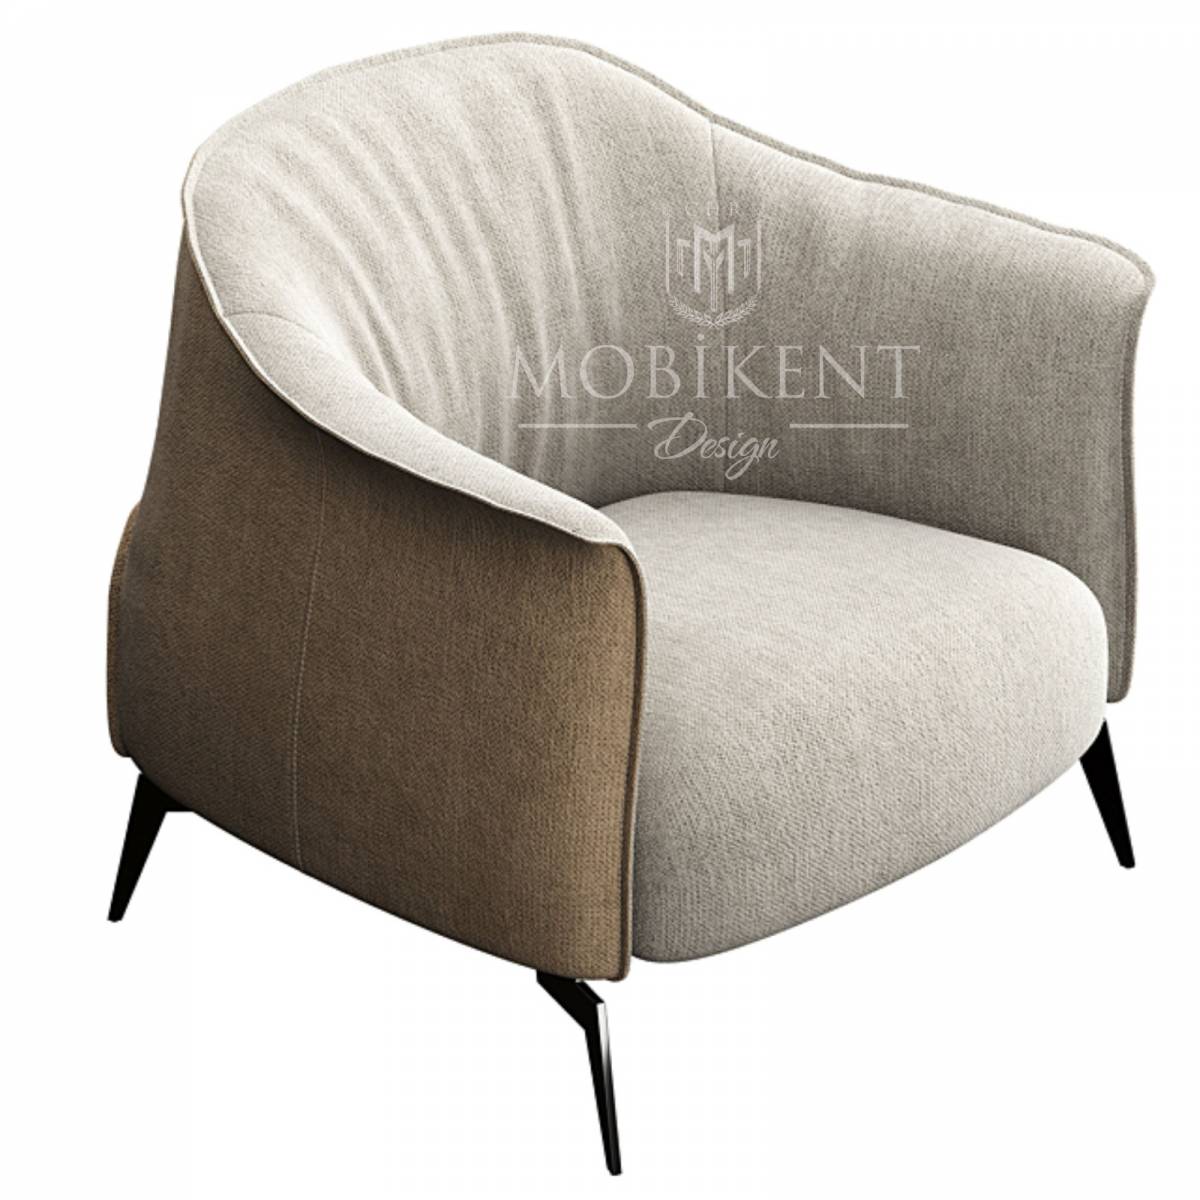 Fauteuil lounge en simili cuir pour salon - MobiKent Design